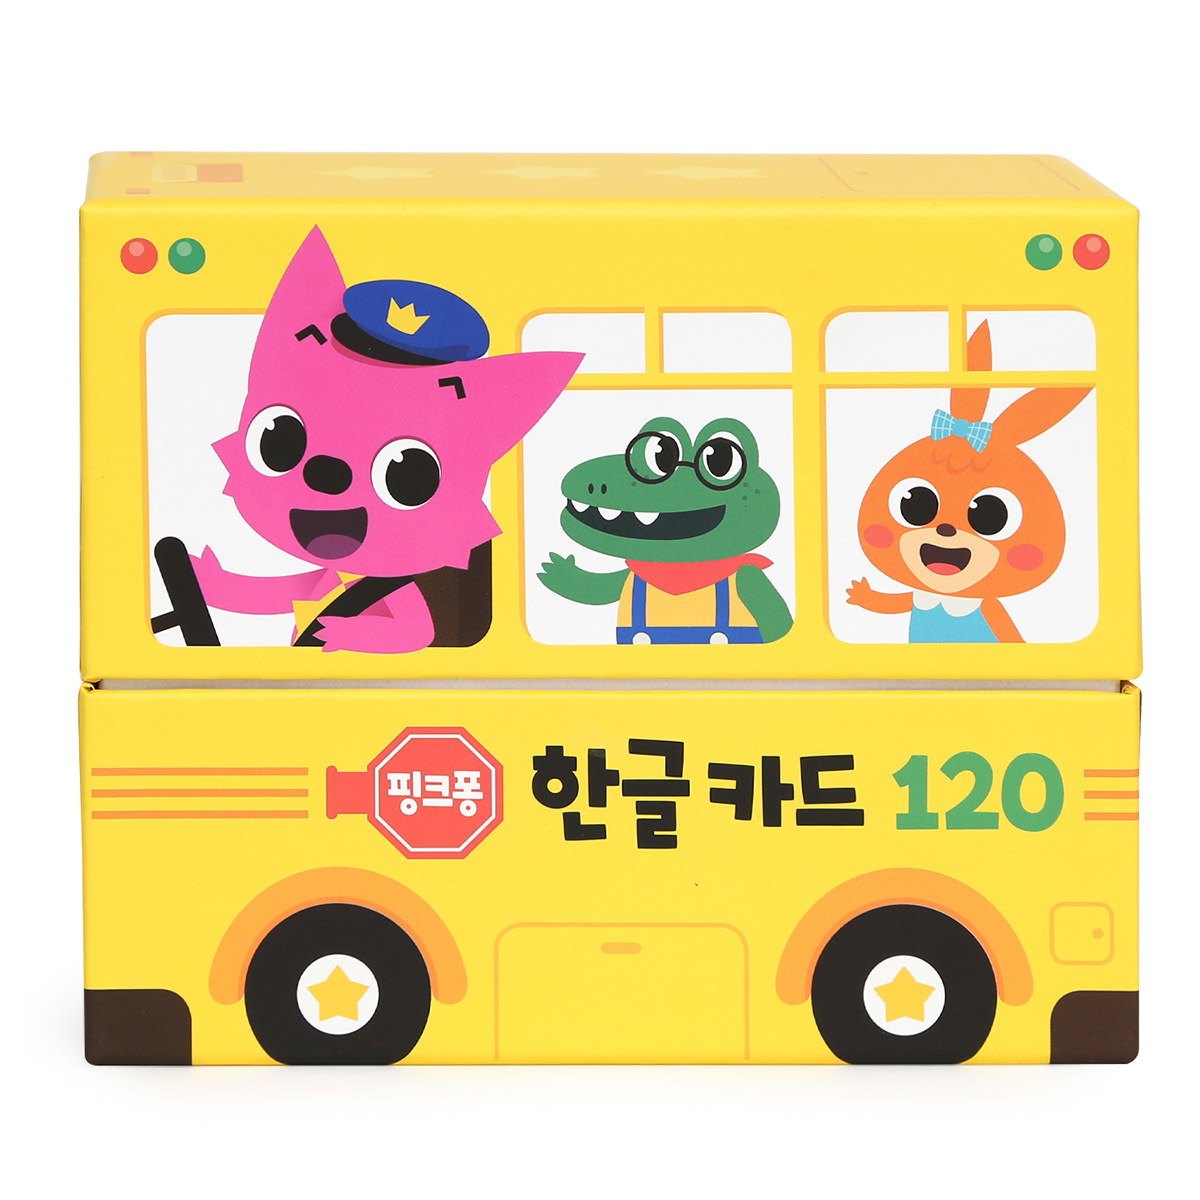 핑크퐁 언어학습 버스, 단어카드 포함, 한글